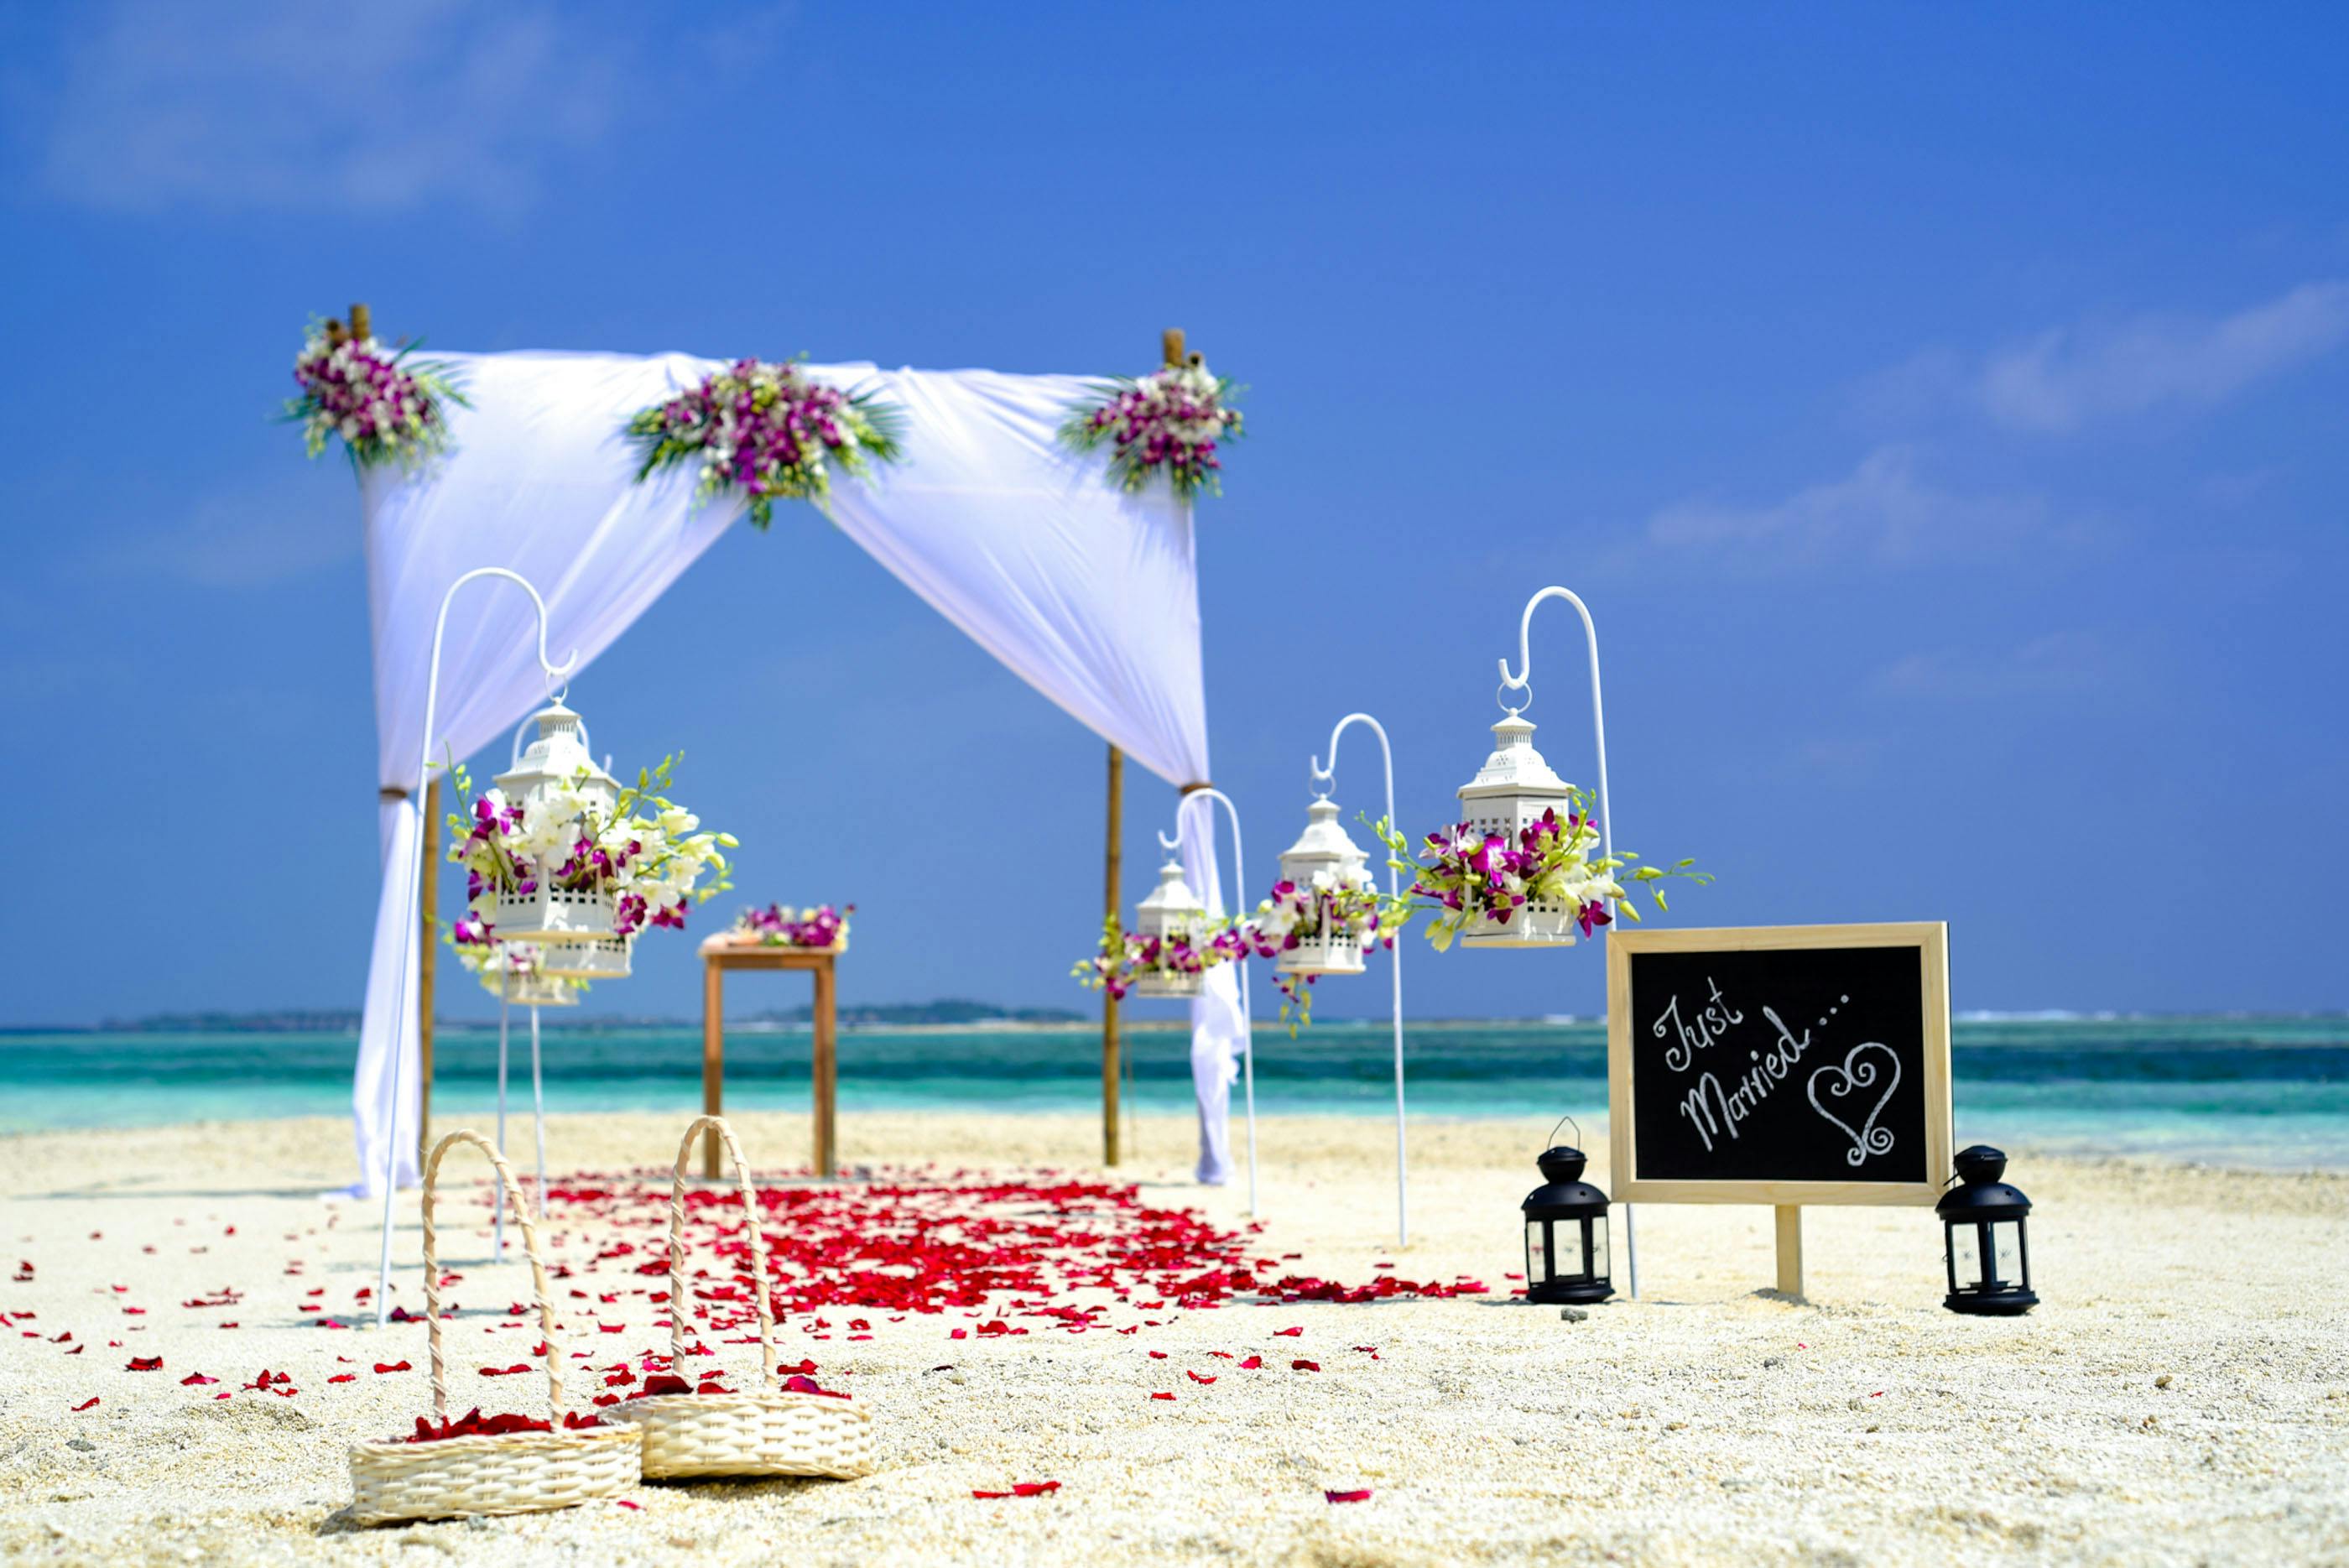 Tải miễn phí 500 Download background wedding Những mẫu nền đẹp nhất dành cho đám cưới